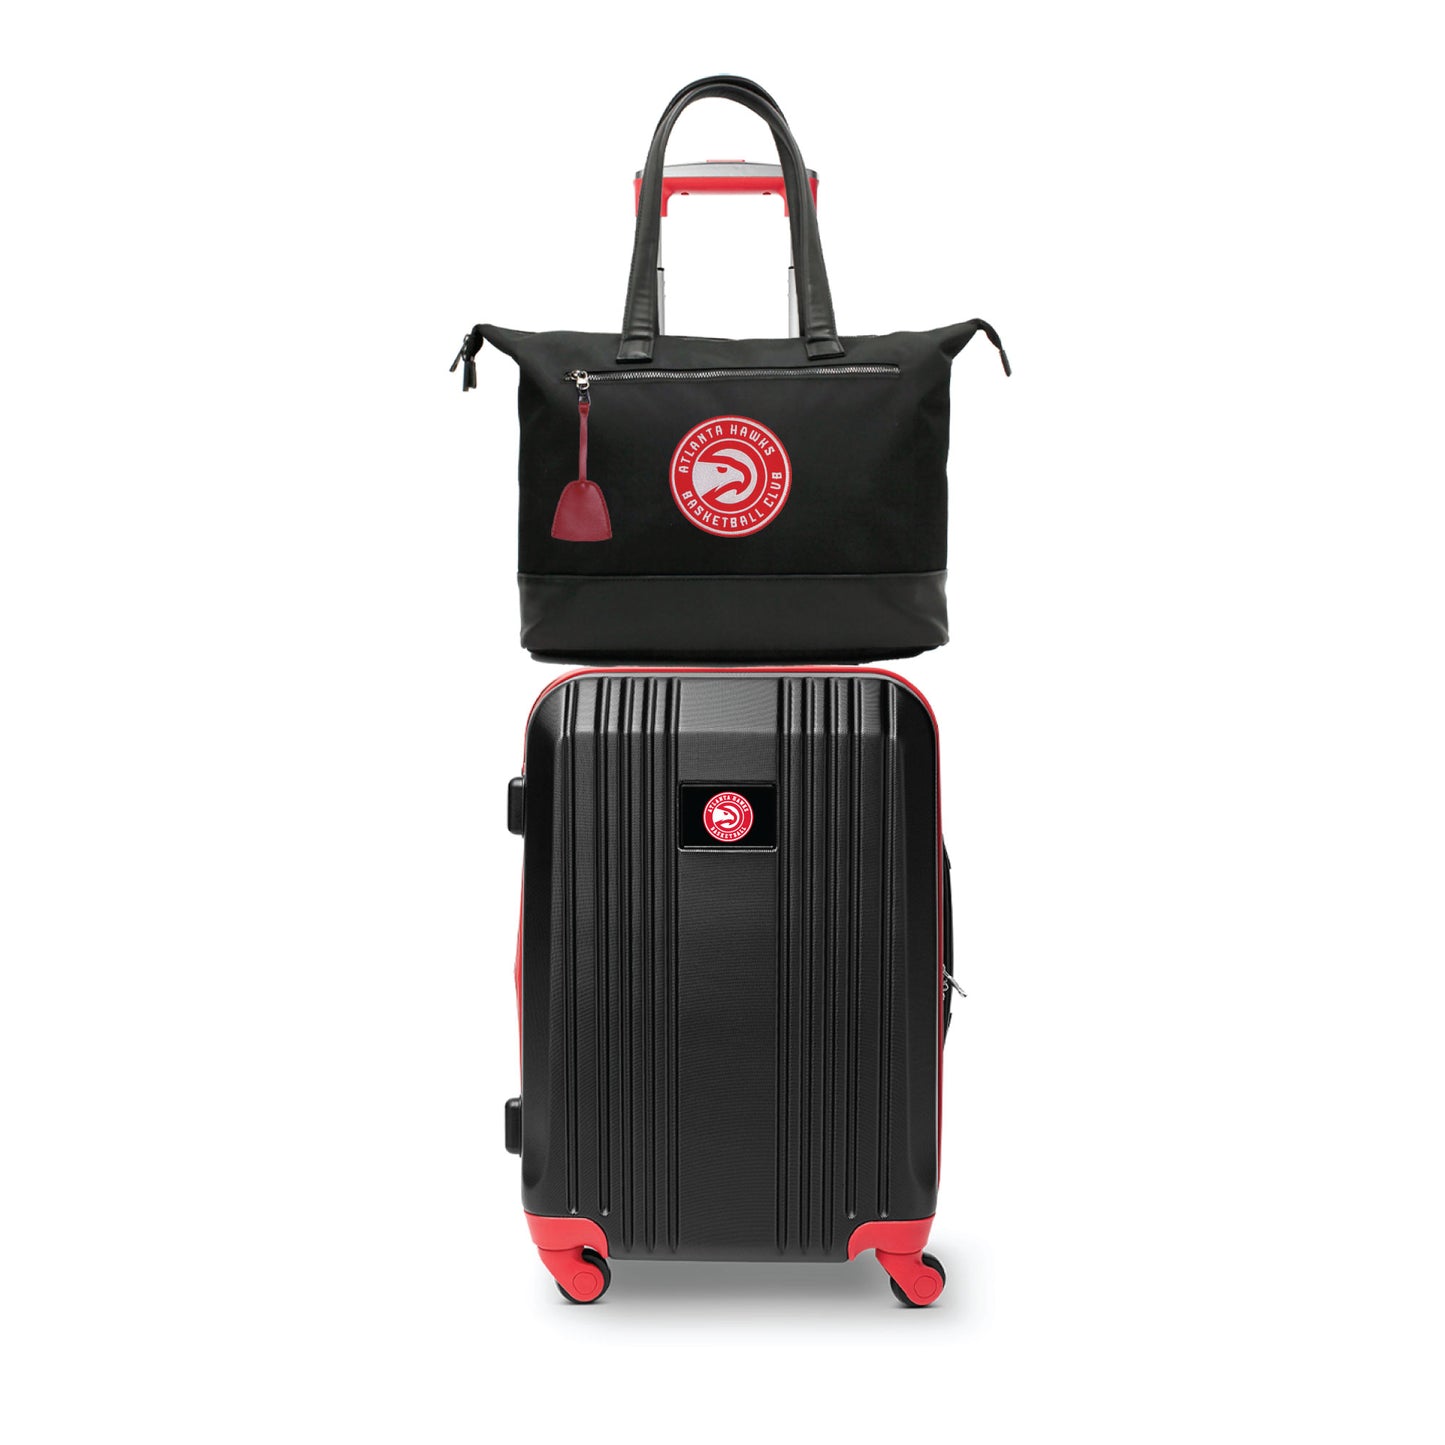 Atlanta Hawks Premium Laptop Tote Bag and Luggage Set